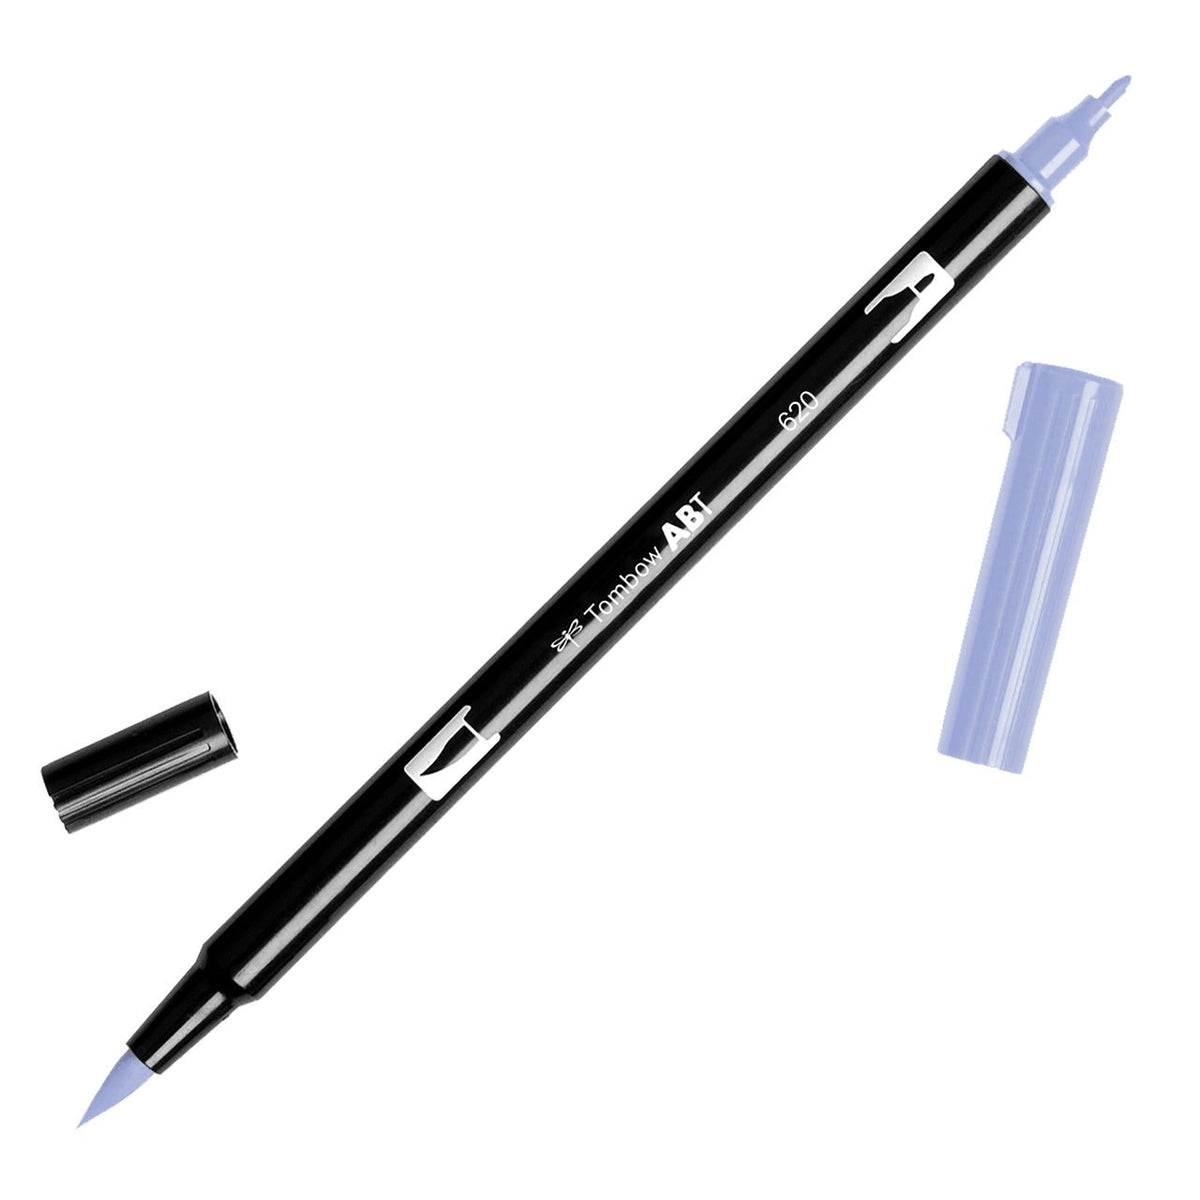 Paint Brush Pens, Kids Paint Brushes, 40 Washable Non-toxic Pens